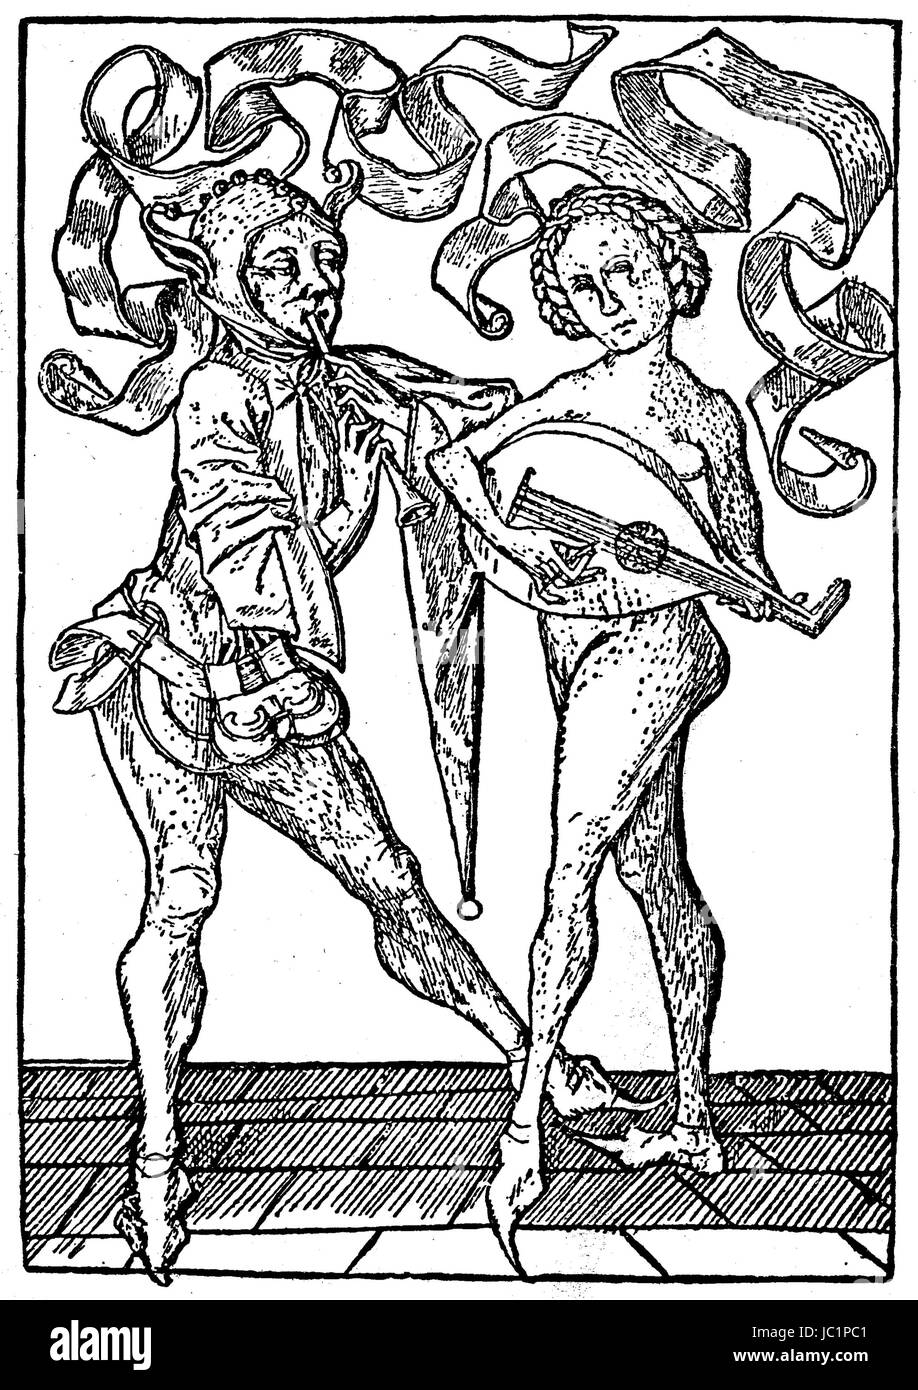 Er tanzt und pfeift, um ihre Meinung, symbolische Gravur auf die Herrschaft der Frau durch den Mann, 15. Jahrhundert, verbesserte digitale Reproduktion aus einer Publikation des Jahres 1880 Stockfoto